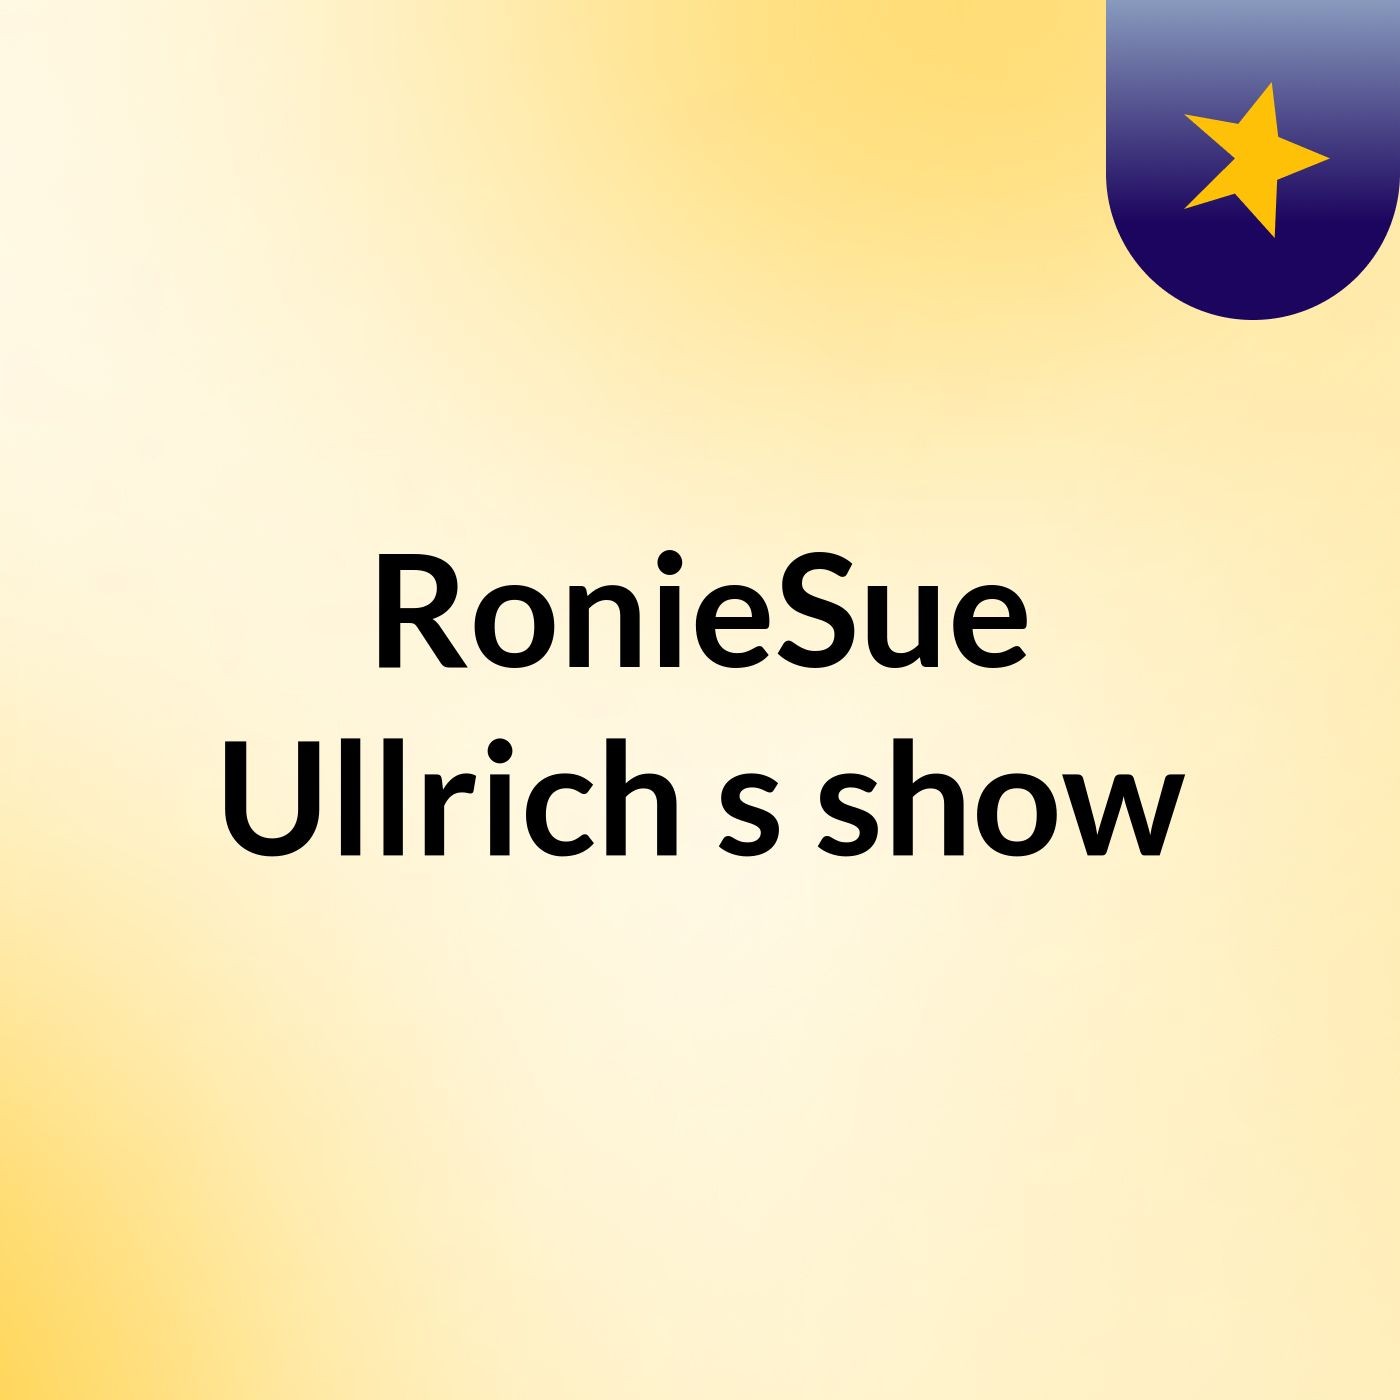 RonieSue Ullrich's show